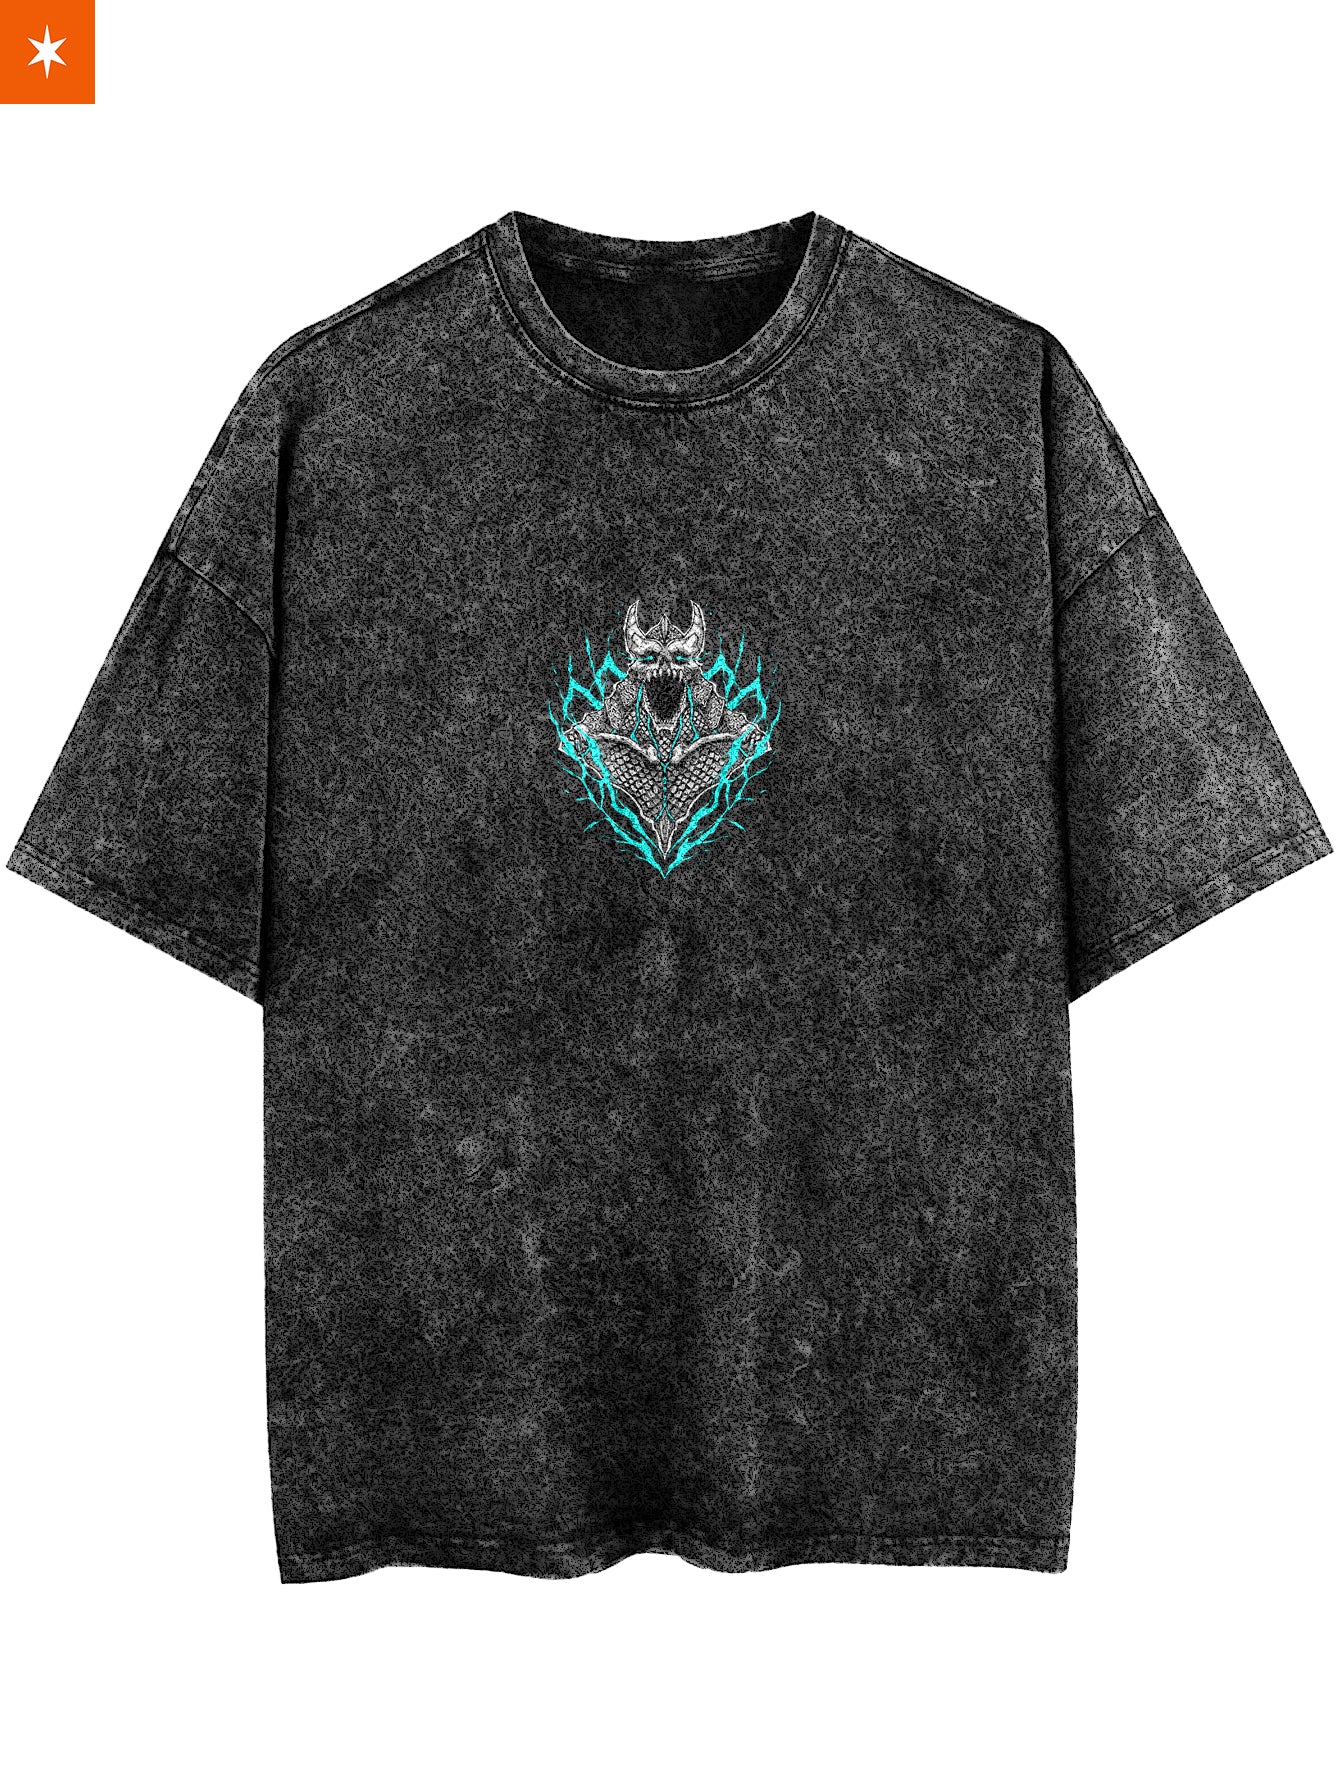 Kaiju No 8 Vintage T-Shirt